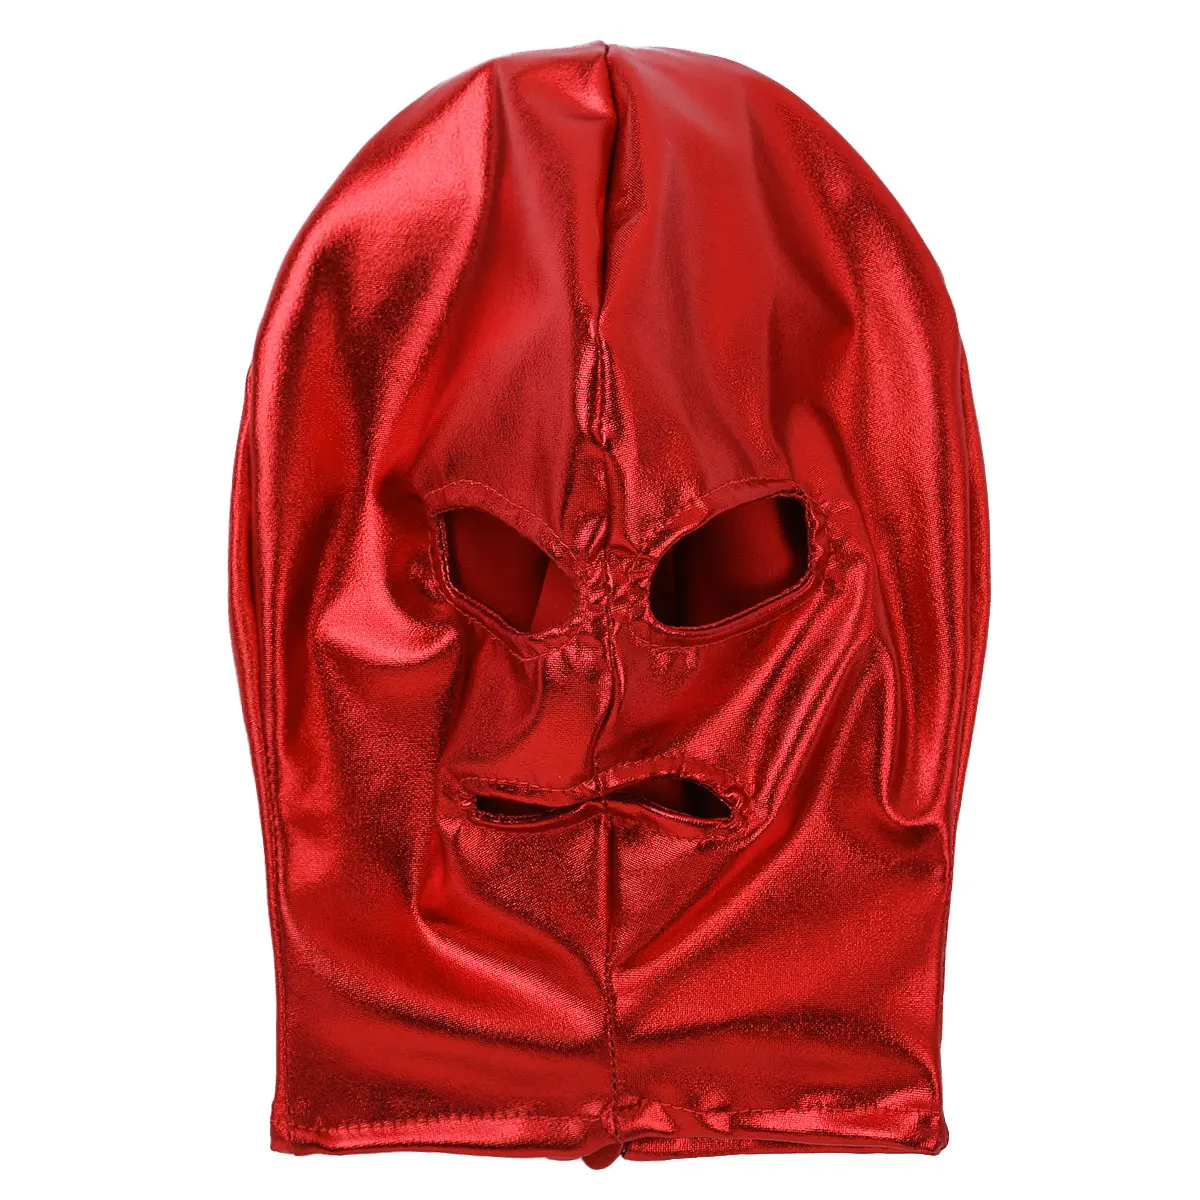 Унисекс для мужчин и женщин Косплей латексная маска для лица блестящие металлические открытые глаза и рот головные уборы Полное Лицо Маска капюшон для ролевых игр костюм